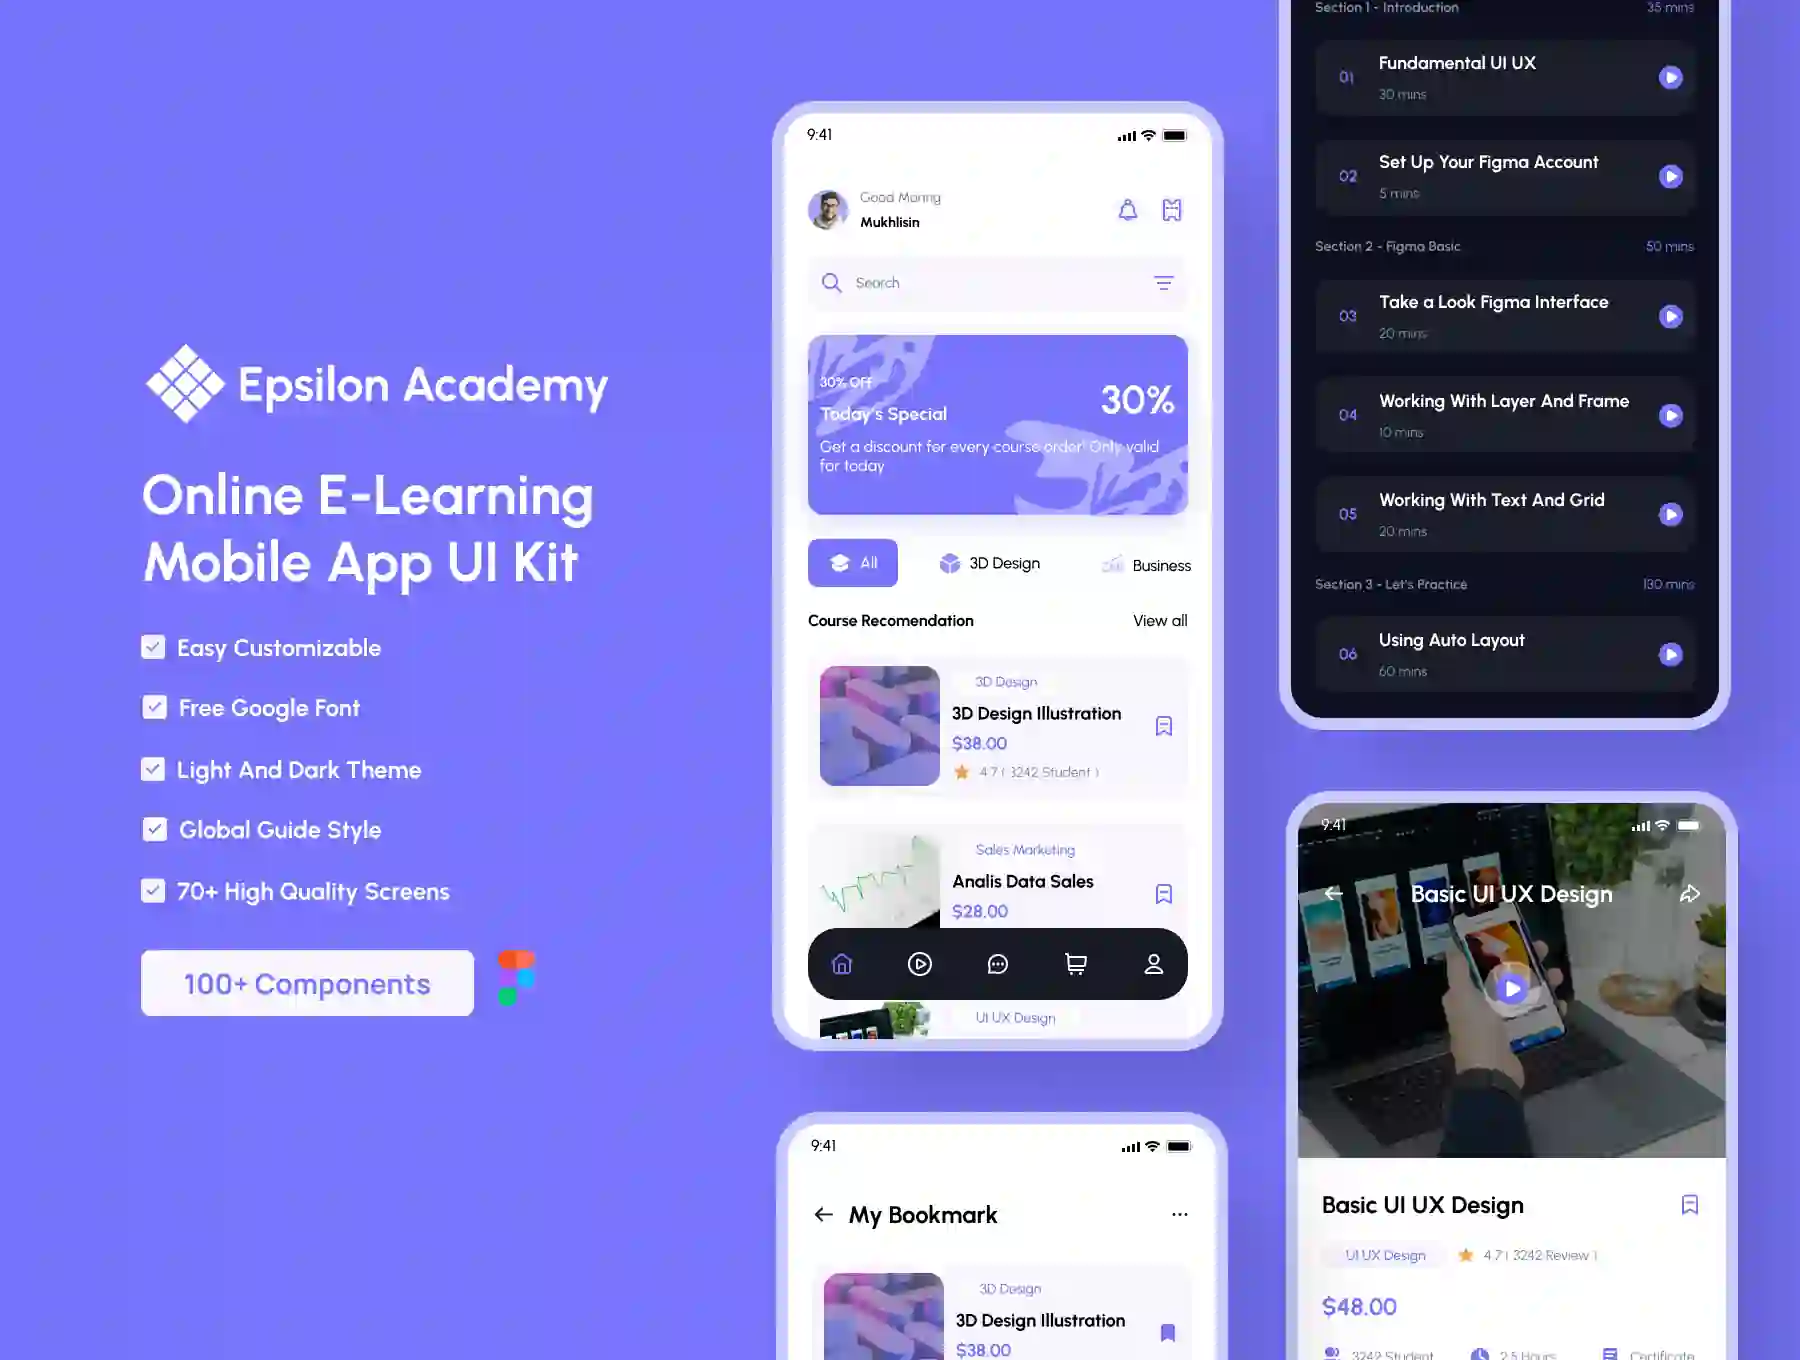 Epsilon Academy - Online E-Learning Mobile App UI Kit